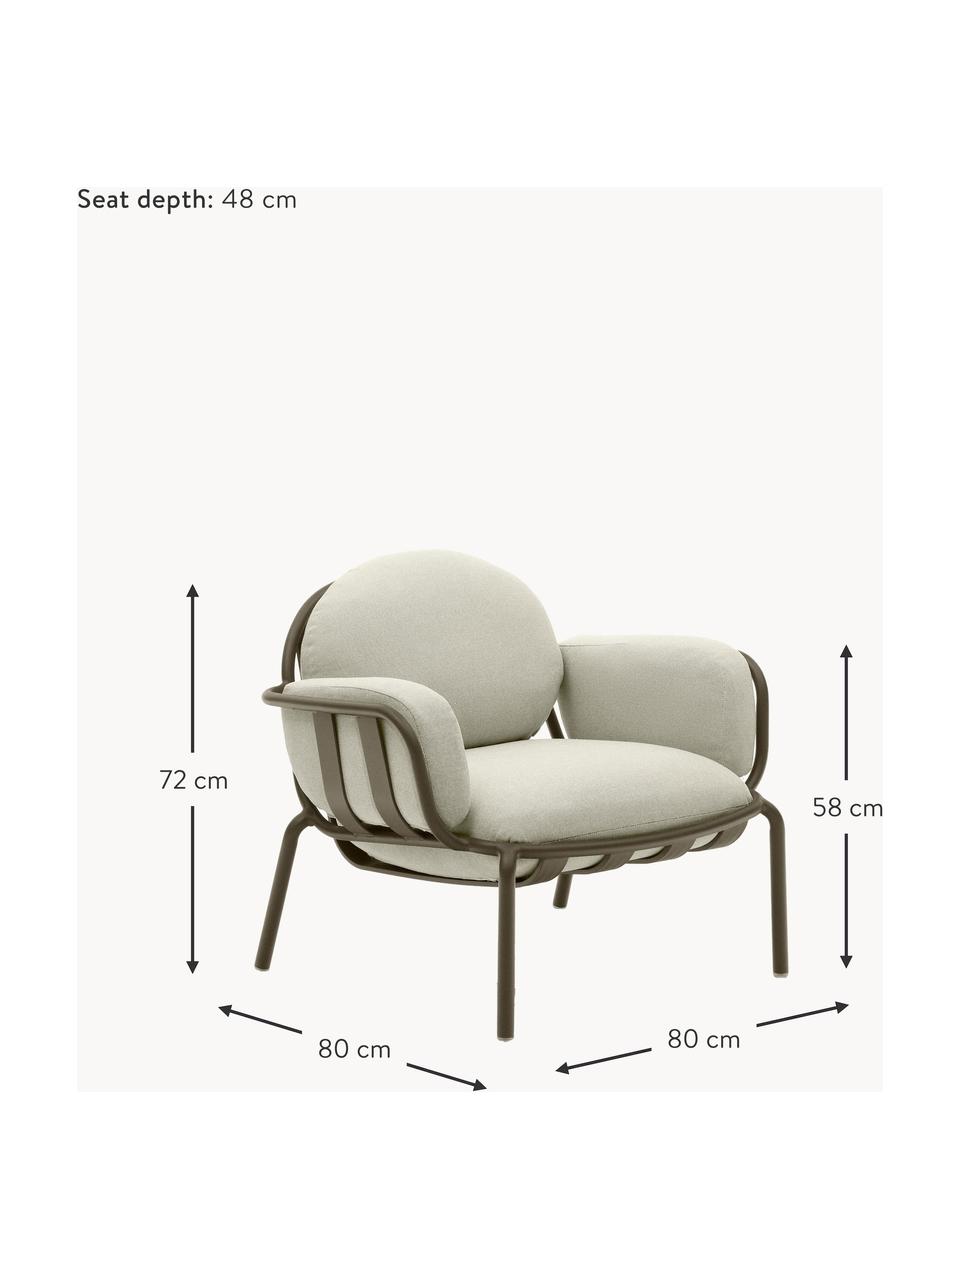 Ogrodowy fotel wypoczynkowy Joncols, Tapicerka: 100% poliester Dzięki tka, Stelaż: aluminium malowane proszk, Jasnobeżowa tkanina, oliwkowy zielony, S 89 x G 80 cm